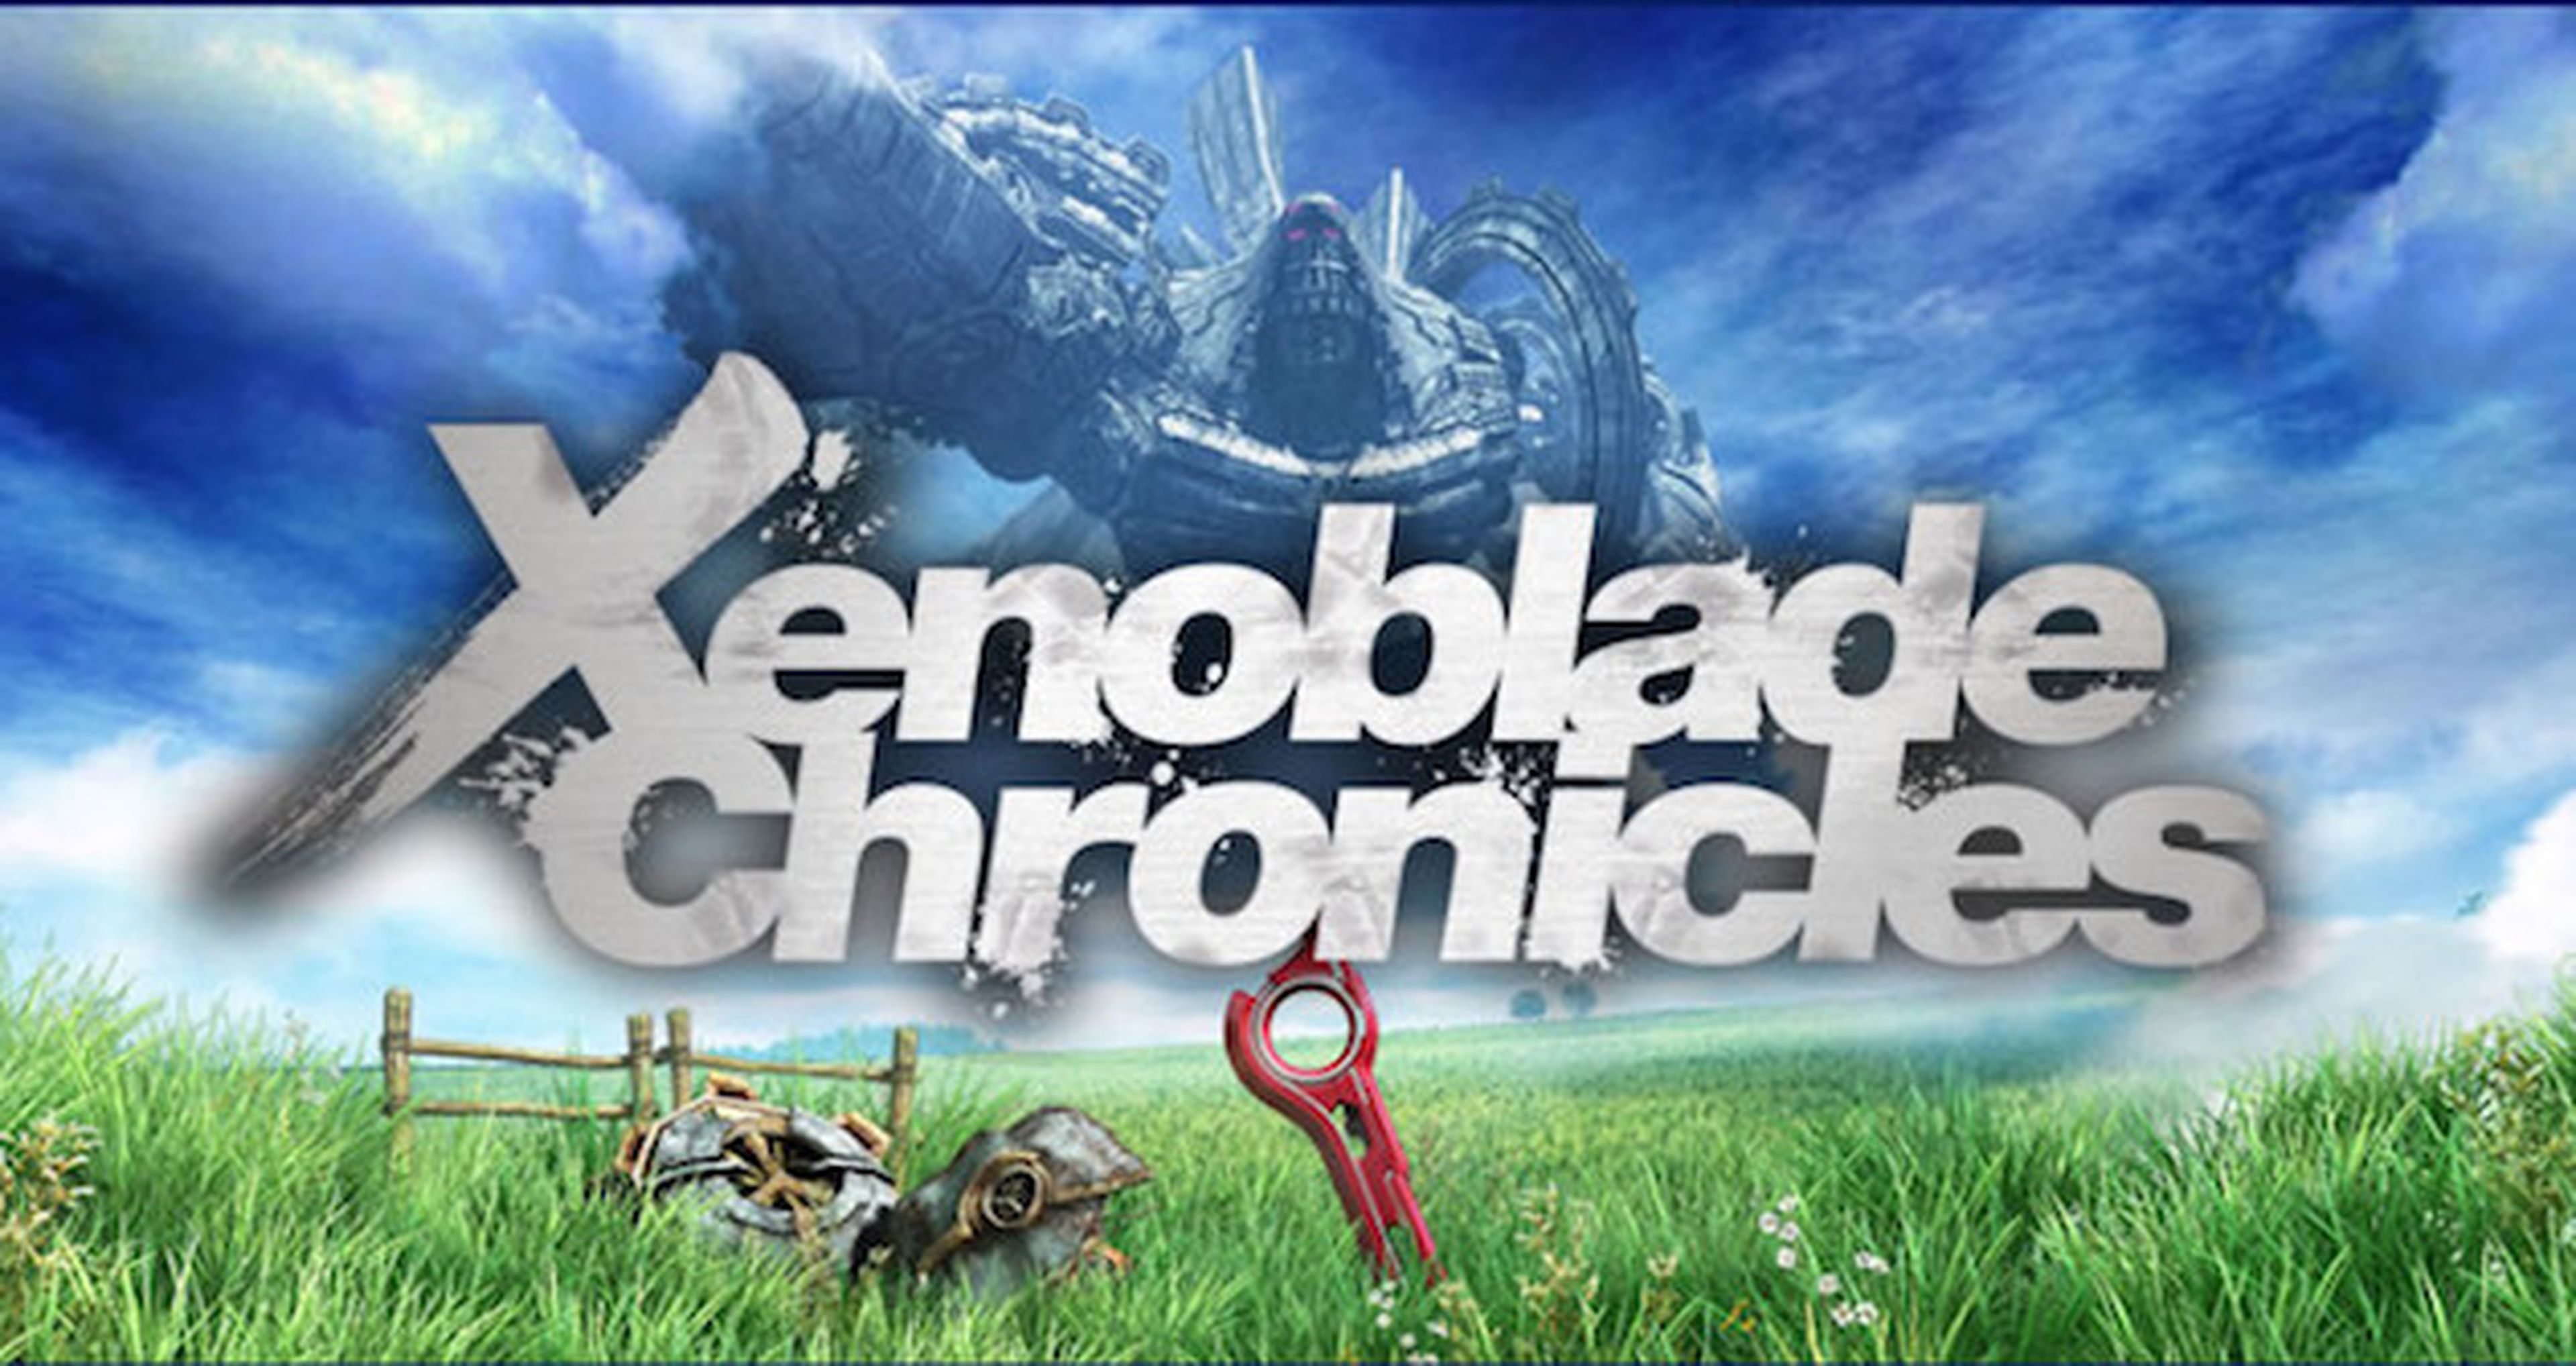 Xenoblade Chronicles 3D compara los gráficos de New Nintendo 3DS y Wii